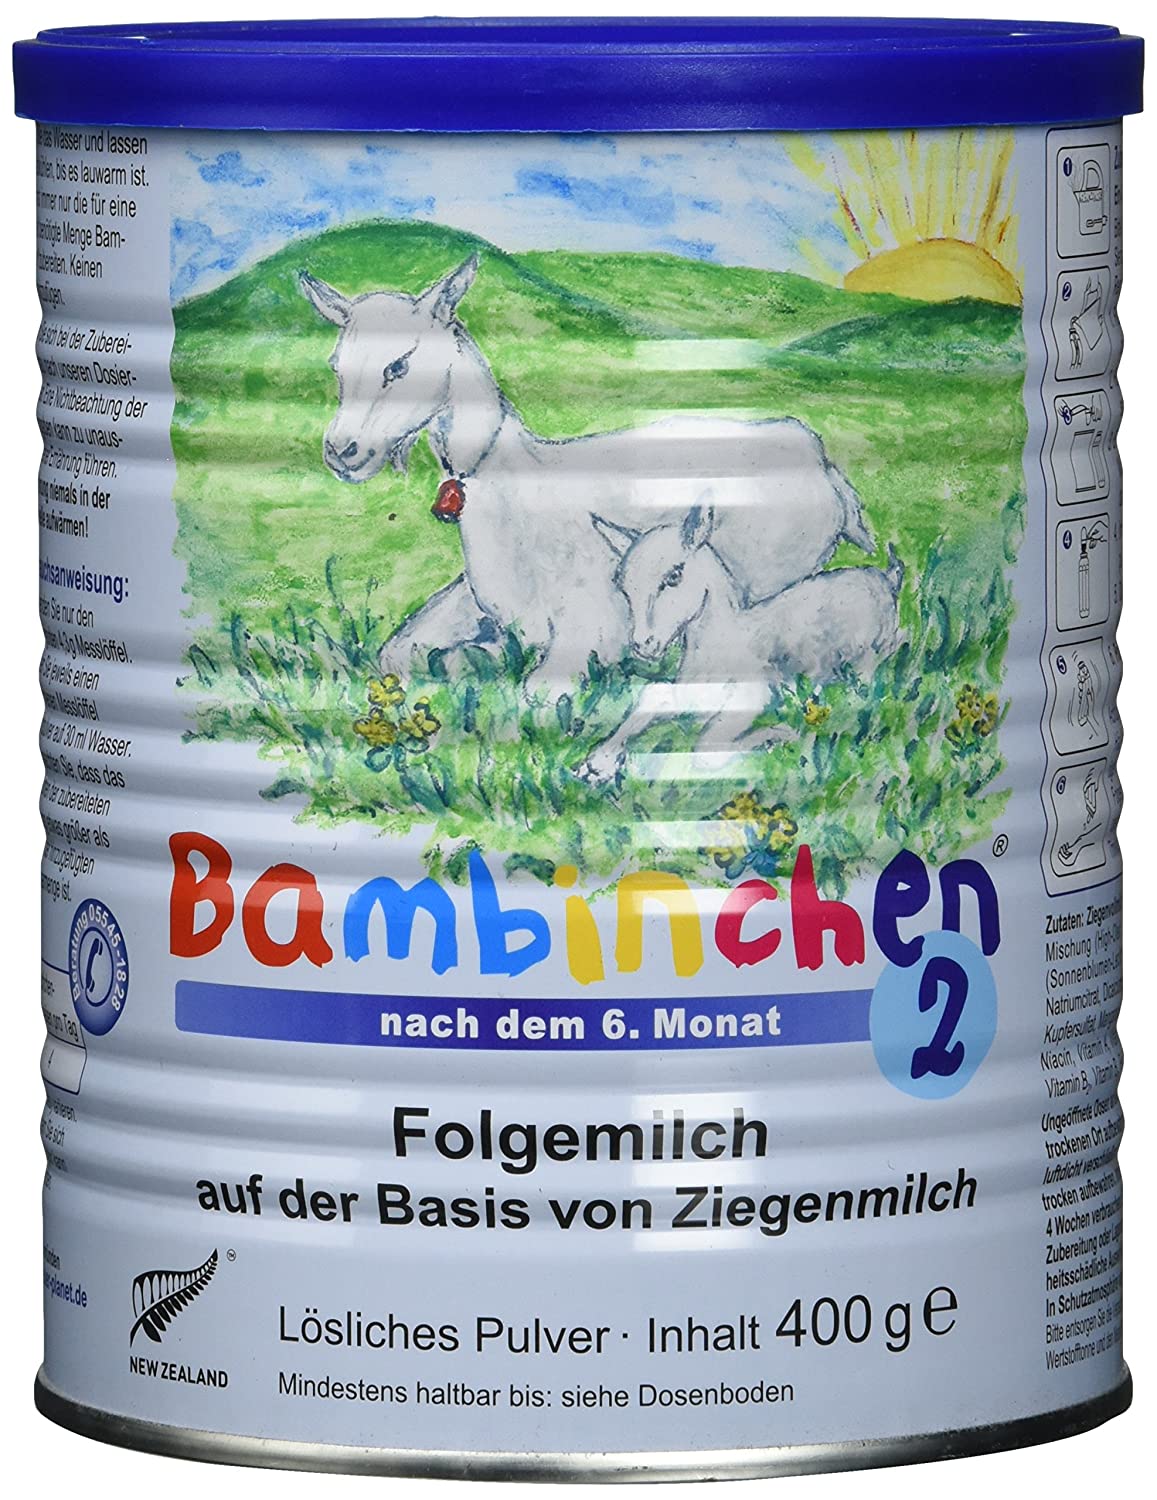 Säuglingsnahrung Bambinchen 2 mit gesunder Ziegenmilch